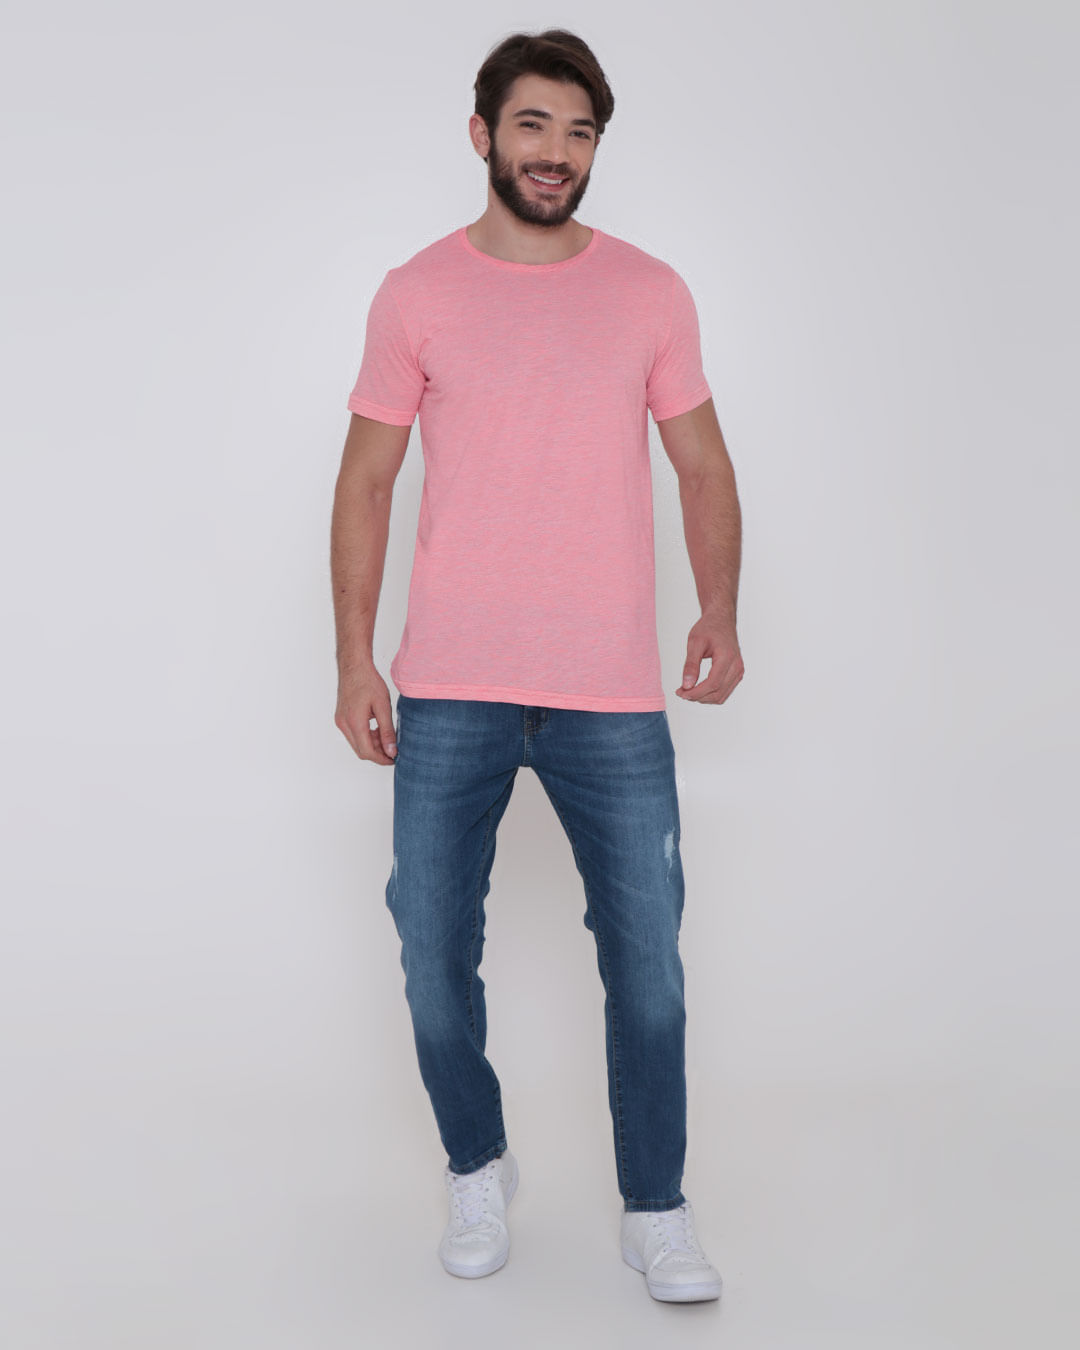 Camiseta Masculina Básica Mesclada Neon Rosa Claro